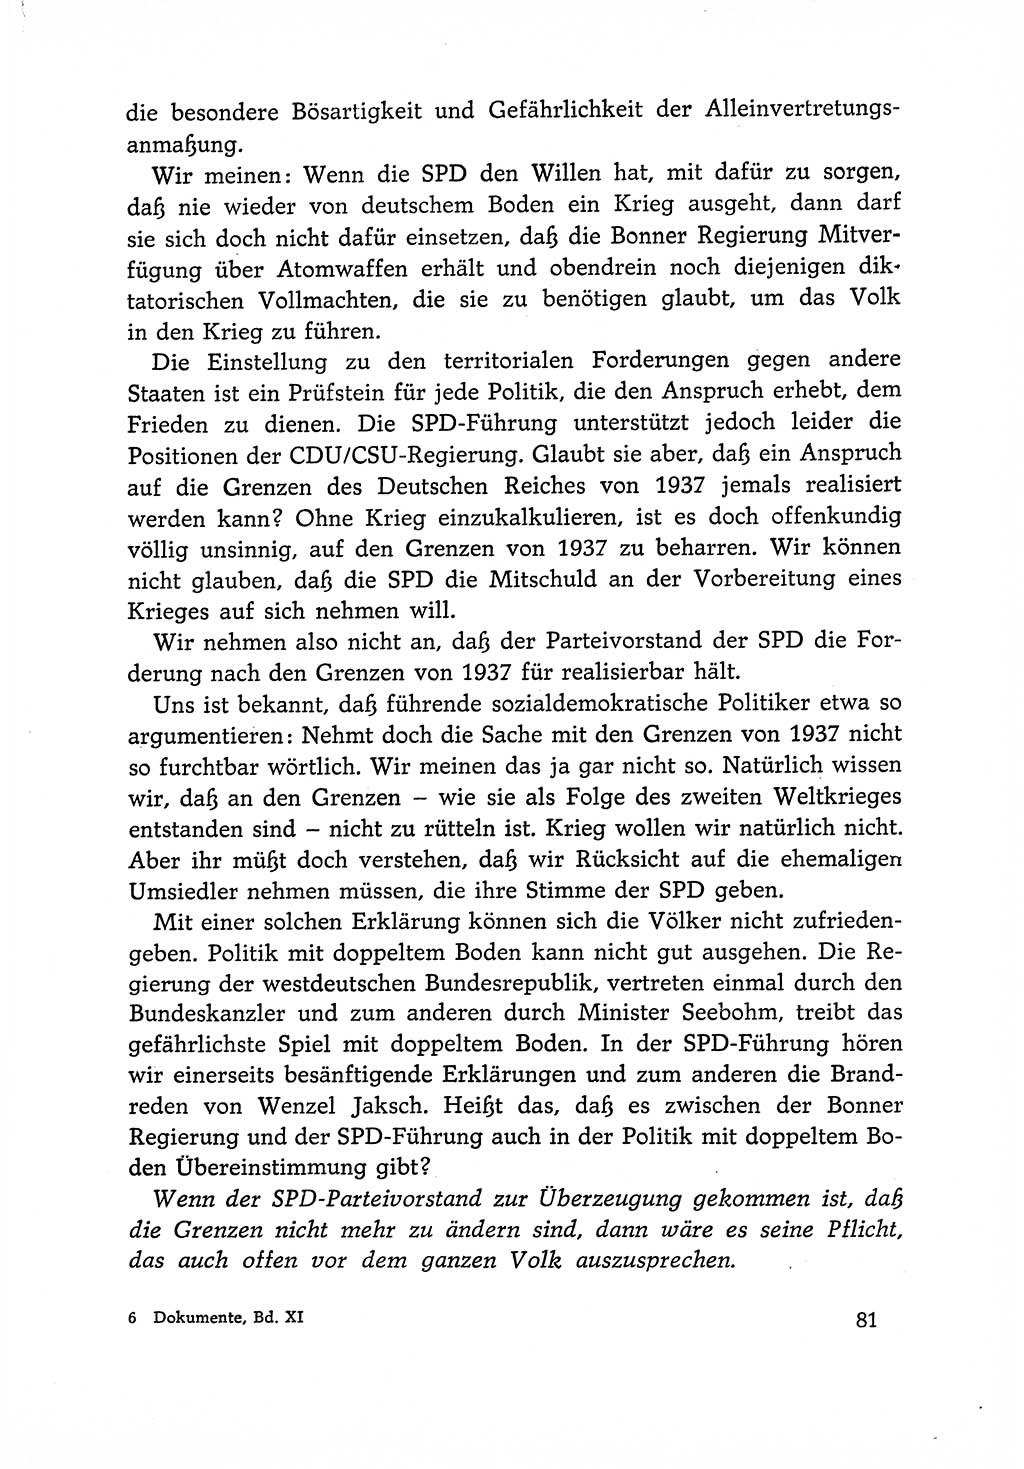 Dokumente der Sozialistischen Einheitspartei Deutschlands (SED) [Deutsche Demokratische Republik (DDR)] 1966-1967, Seite 81 (Dok. SED DDR 1966-1967, S. 81)